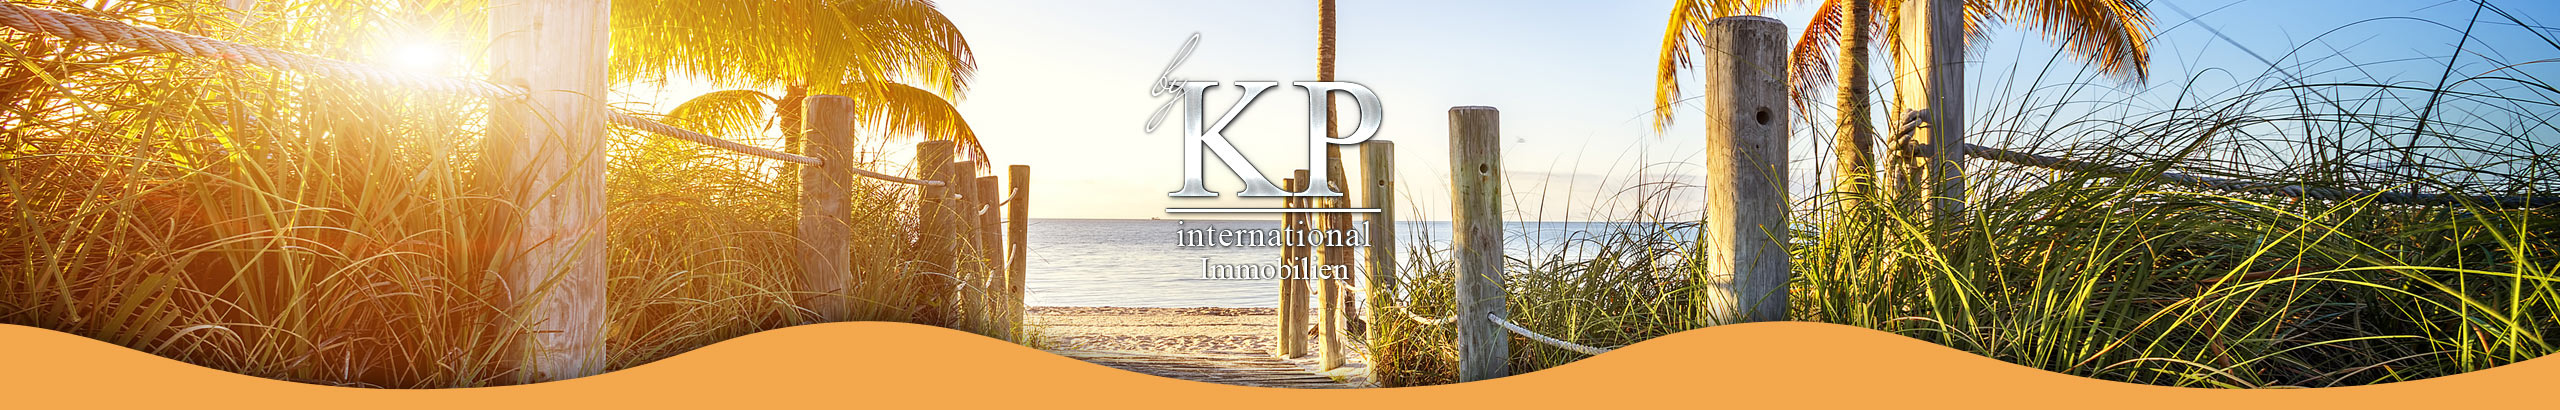 KP-International Immobilien Hofheim